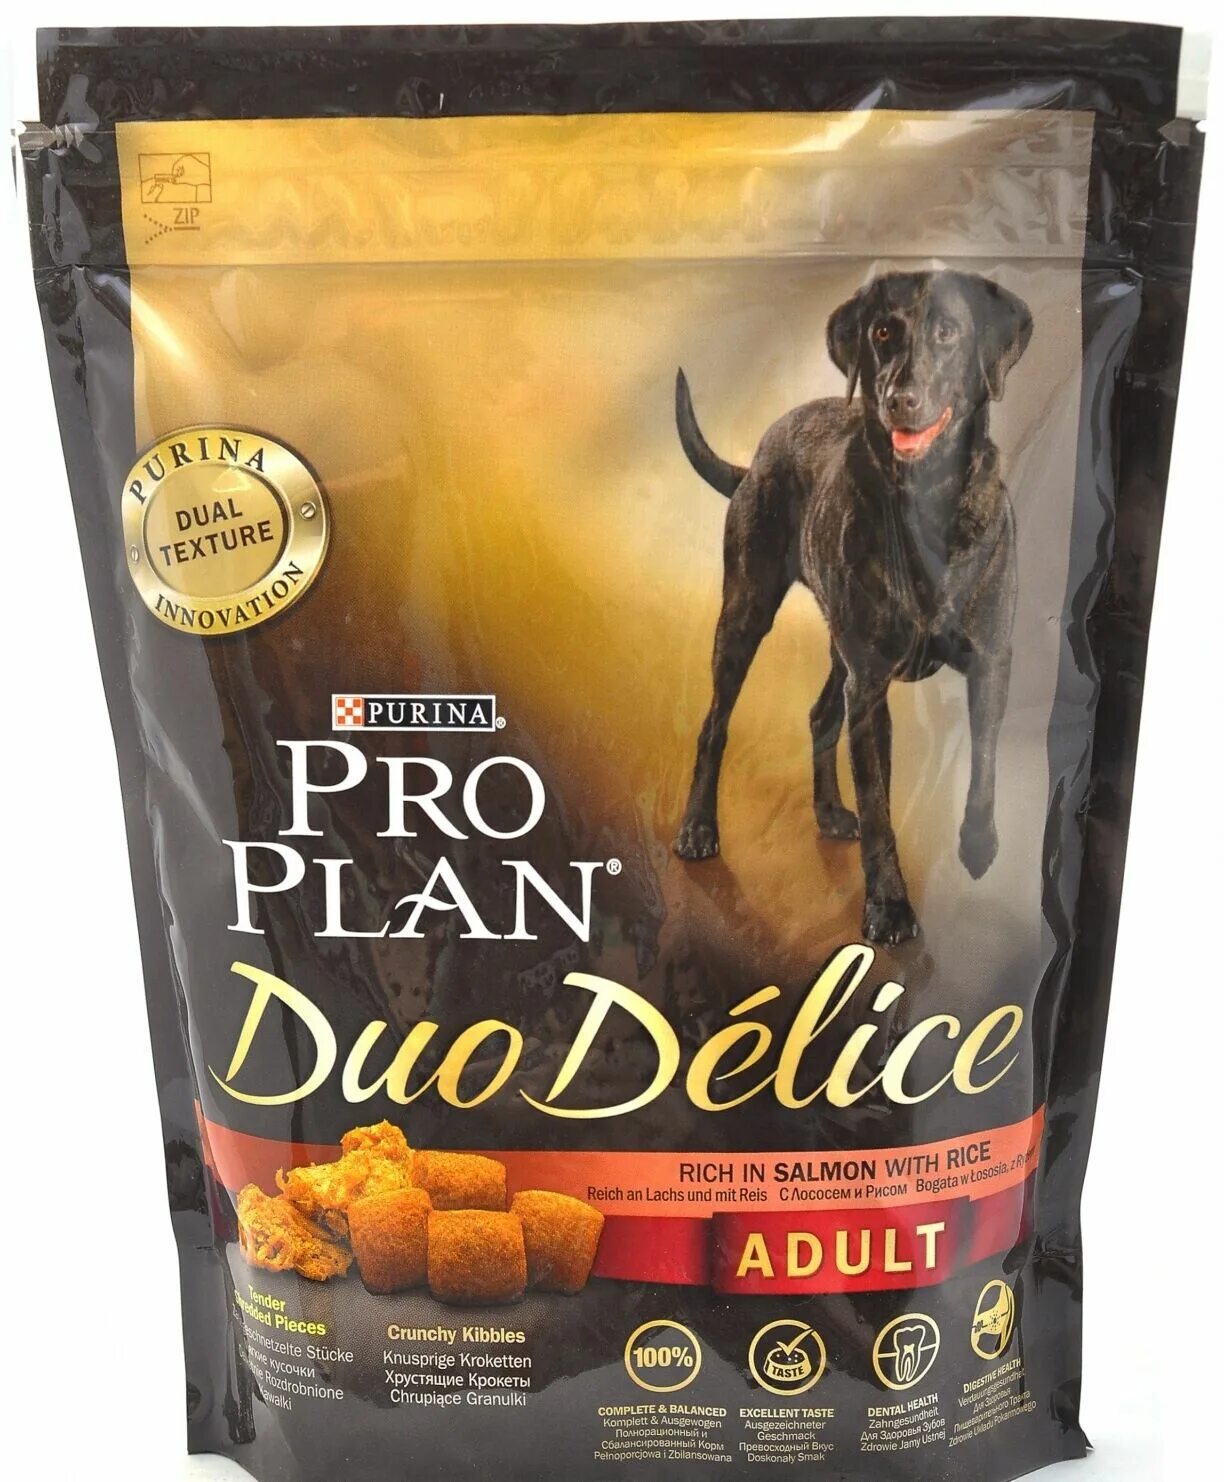 Pro корм для собак купить. Пурина дуо Делис корм для собак. Pro Plan Duo Delice корм для собак. Корм Проплан  дуо Делис. Проплан дуо Делис для собак.